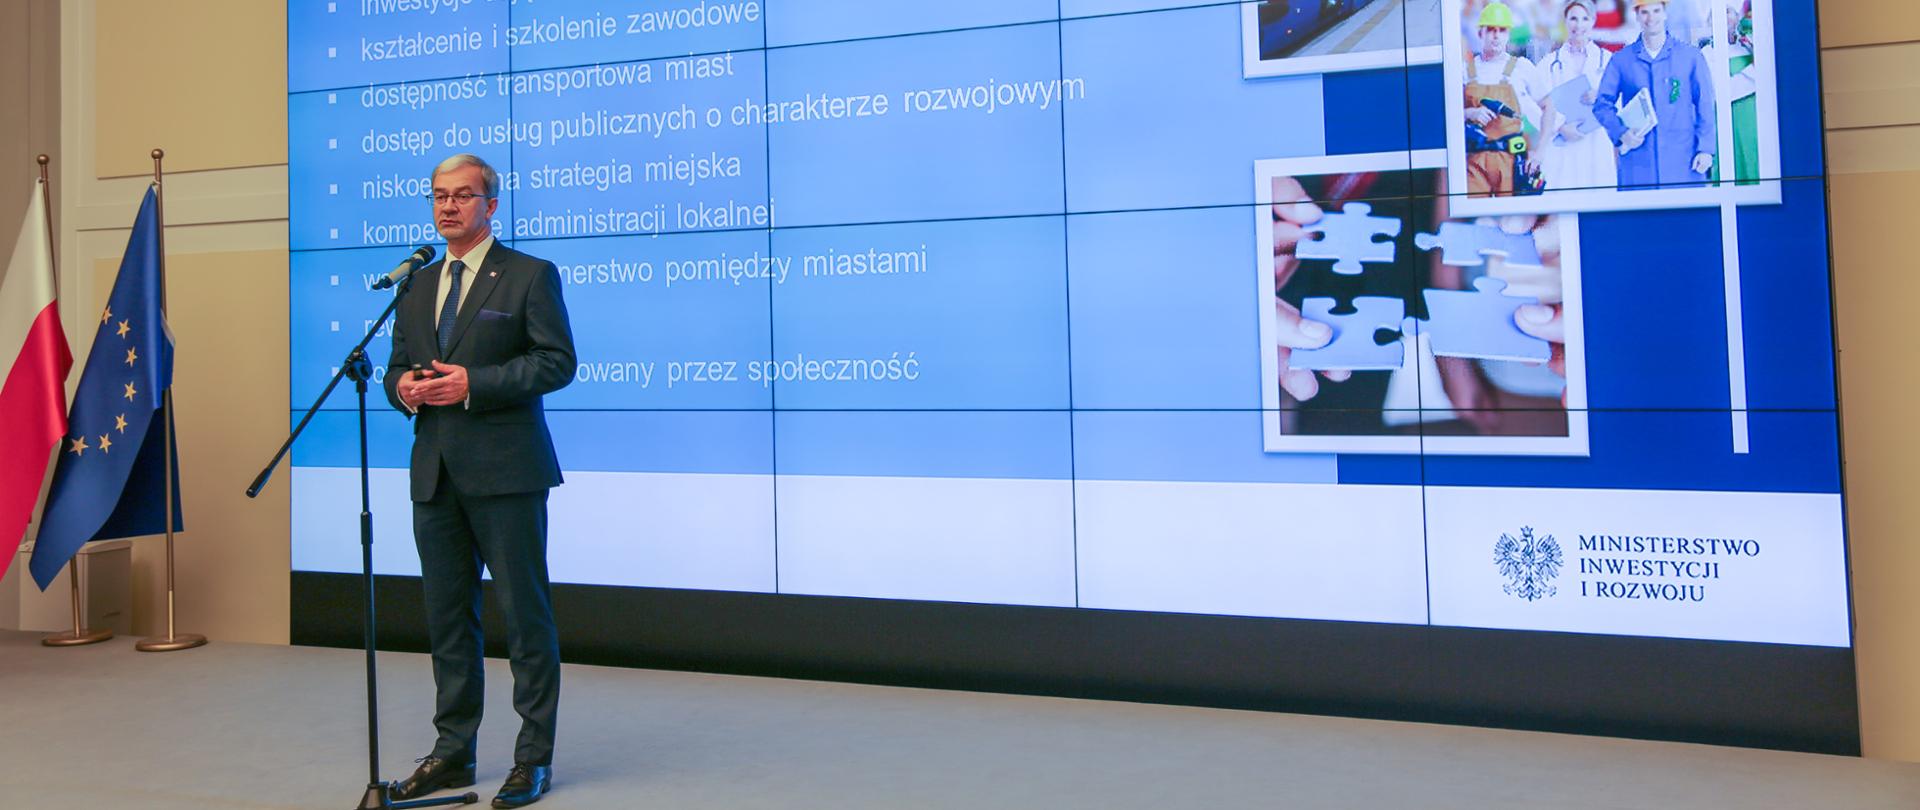 Podczas konferencji prasowej minister Jerzy Kwieciński stoi na scenie przed mikrofonem. Za jego plecami na dużym ekranie wyświetlona jest prezentacja. W lewym rogu stoją dwie flagi Polski i UE.